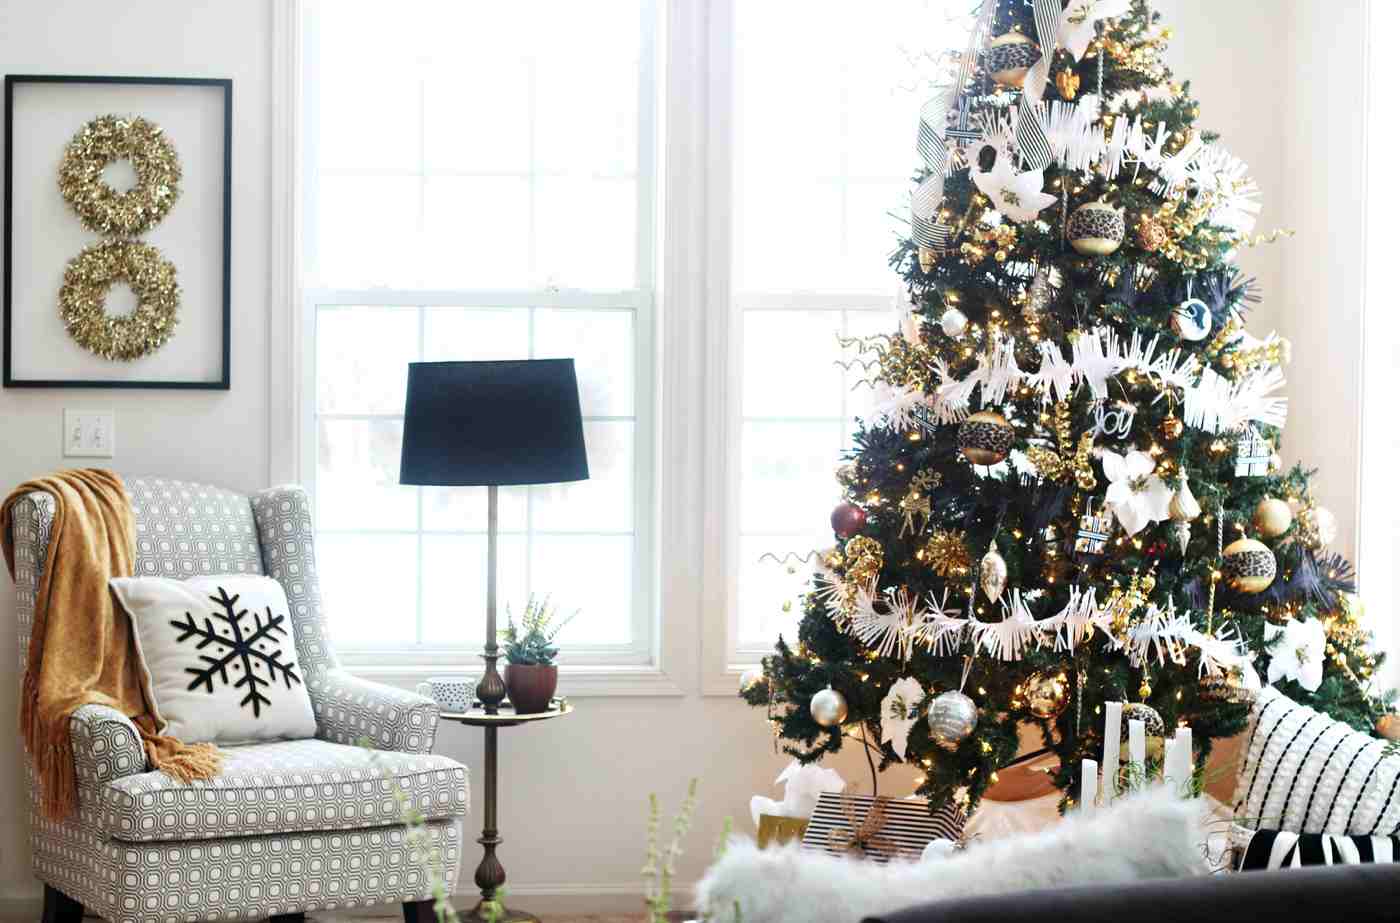 Weihnachtsbaum Schmucken Trends Fur Diesen Winter Im Uberblick